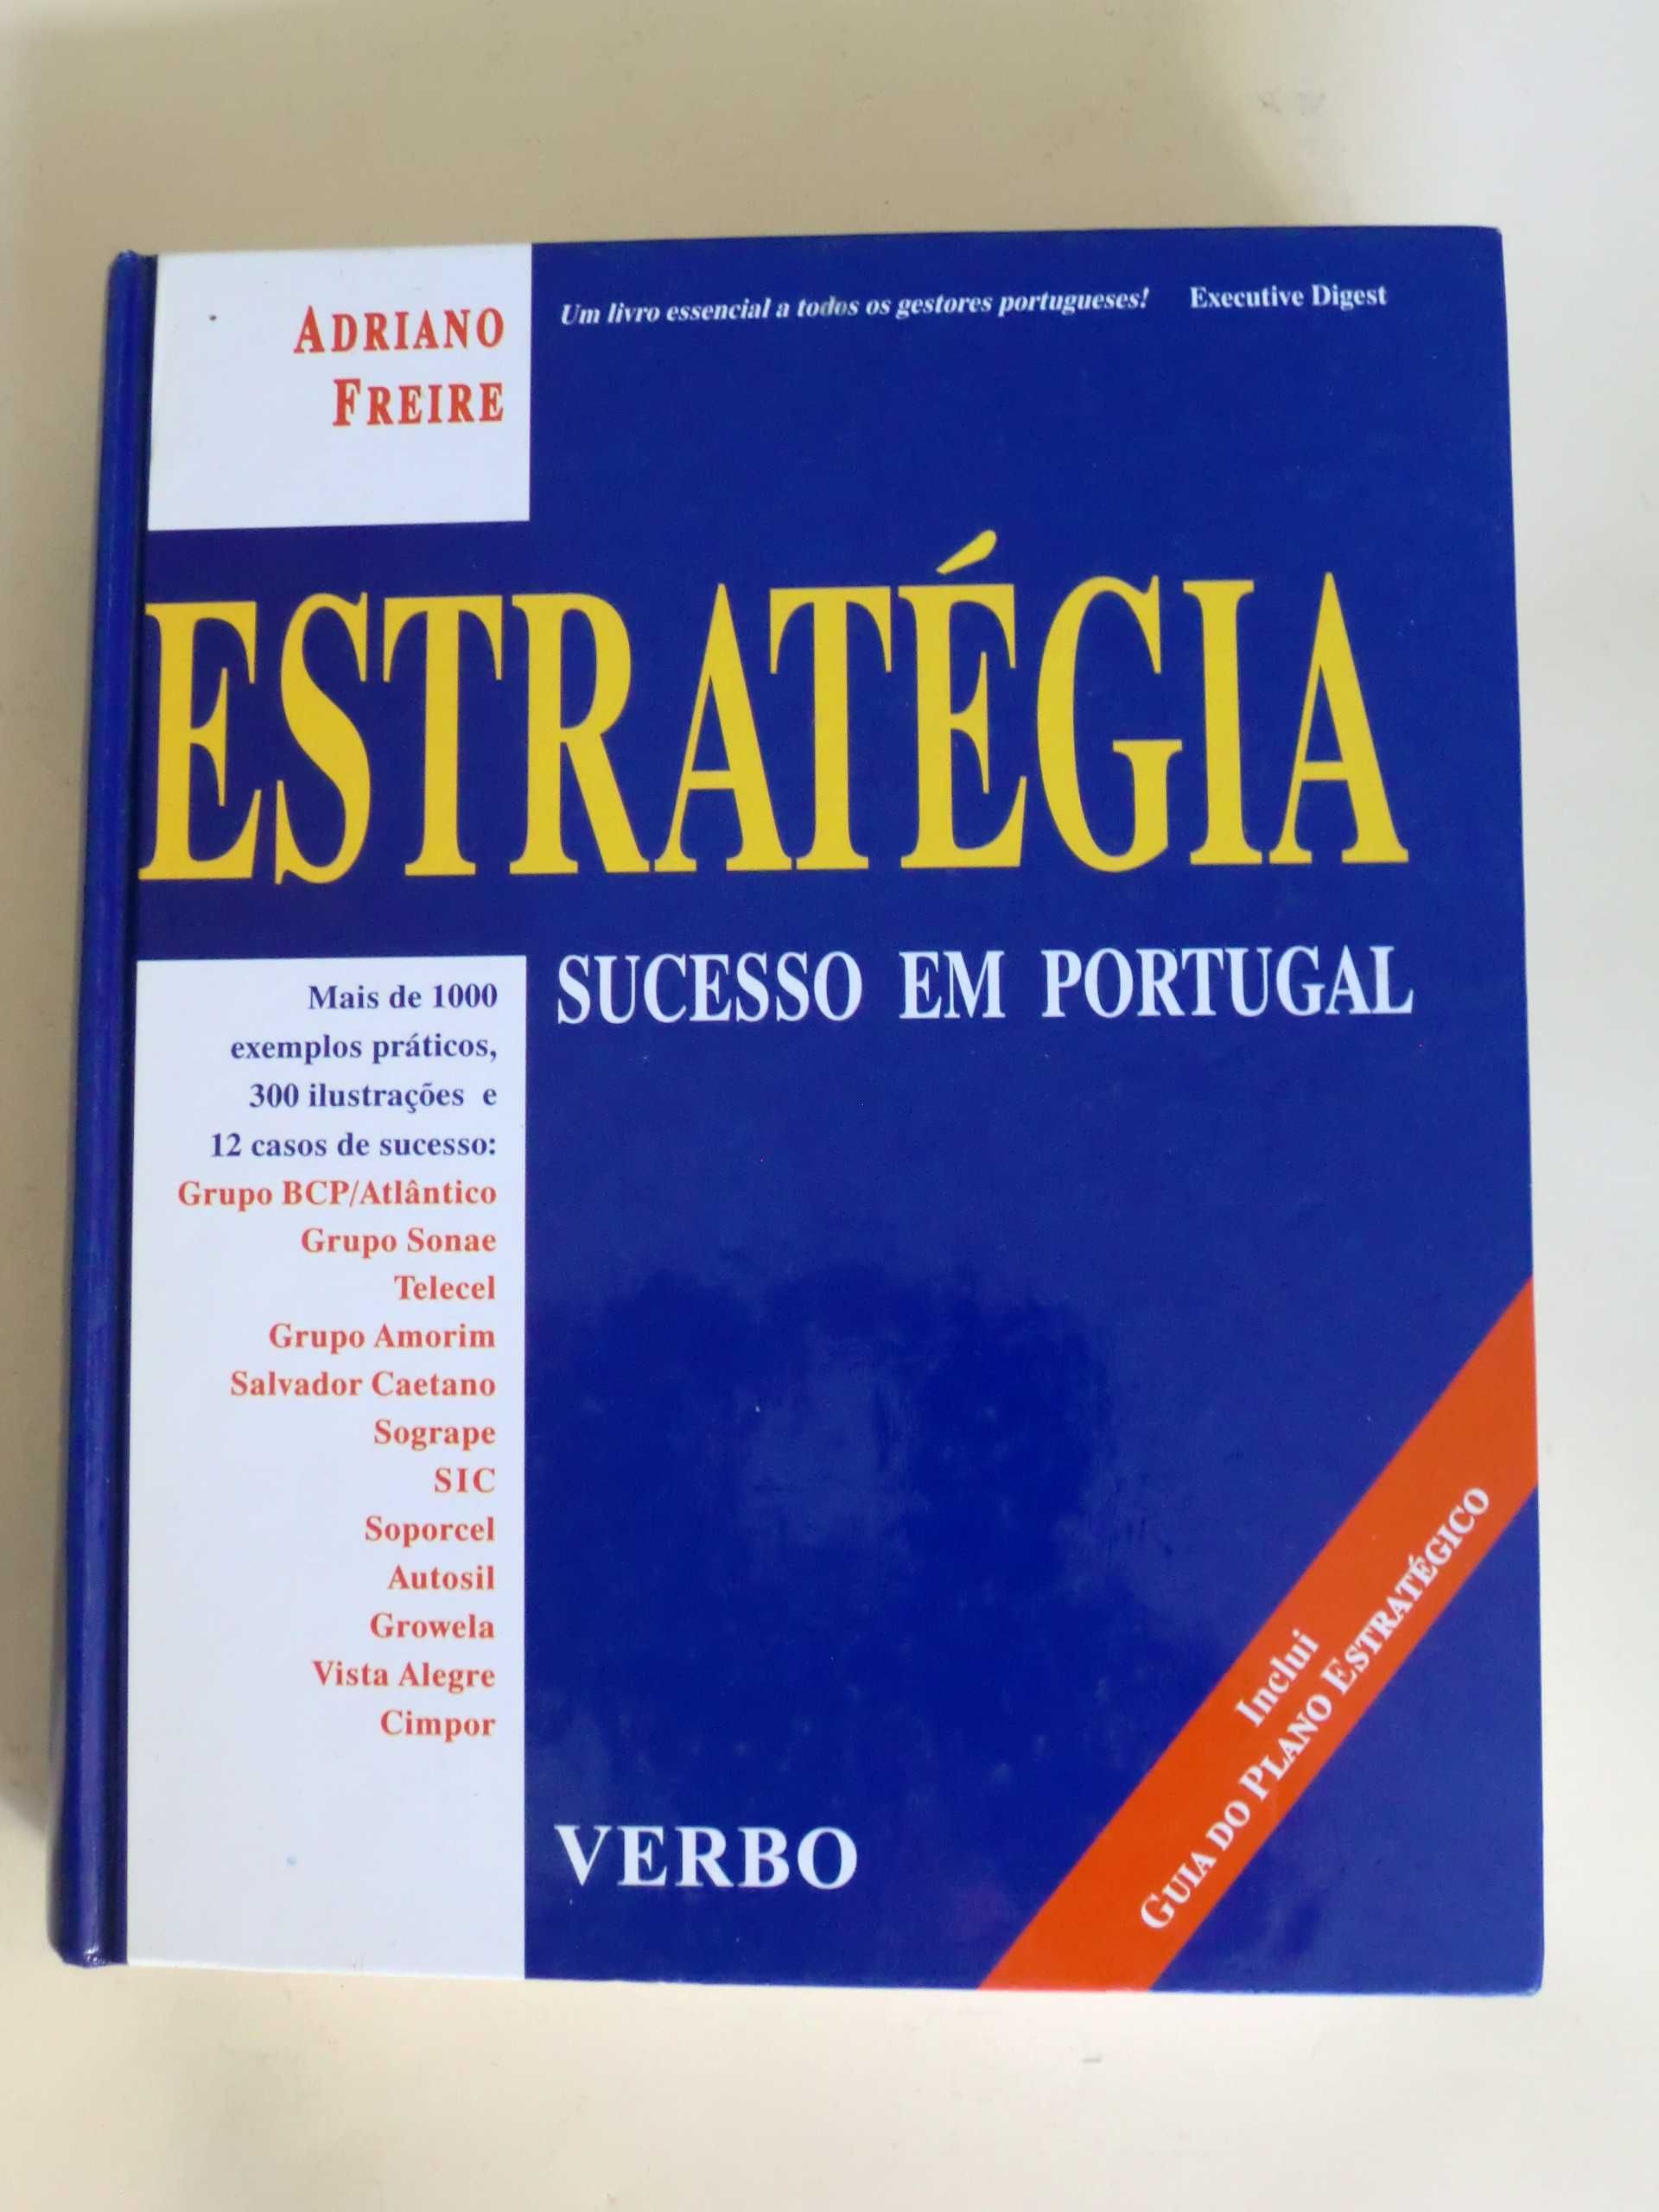 Estratégia
Sucesso em Portugal
de Adriano Freire